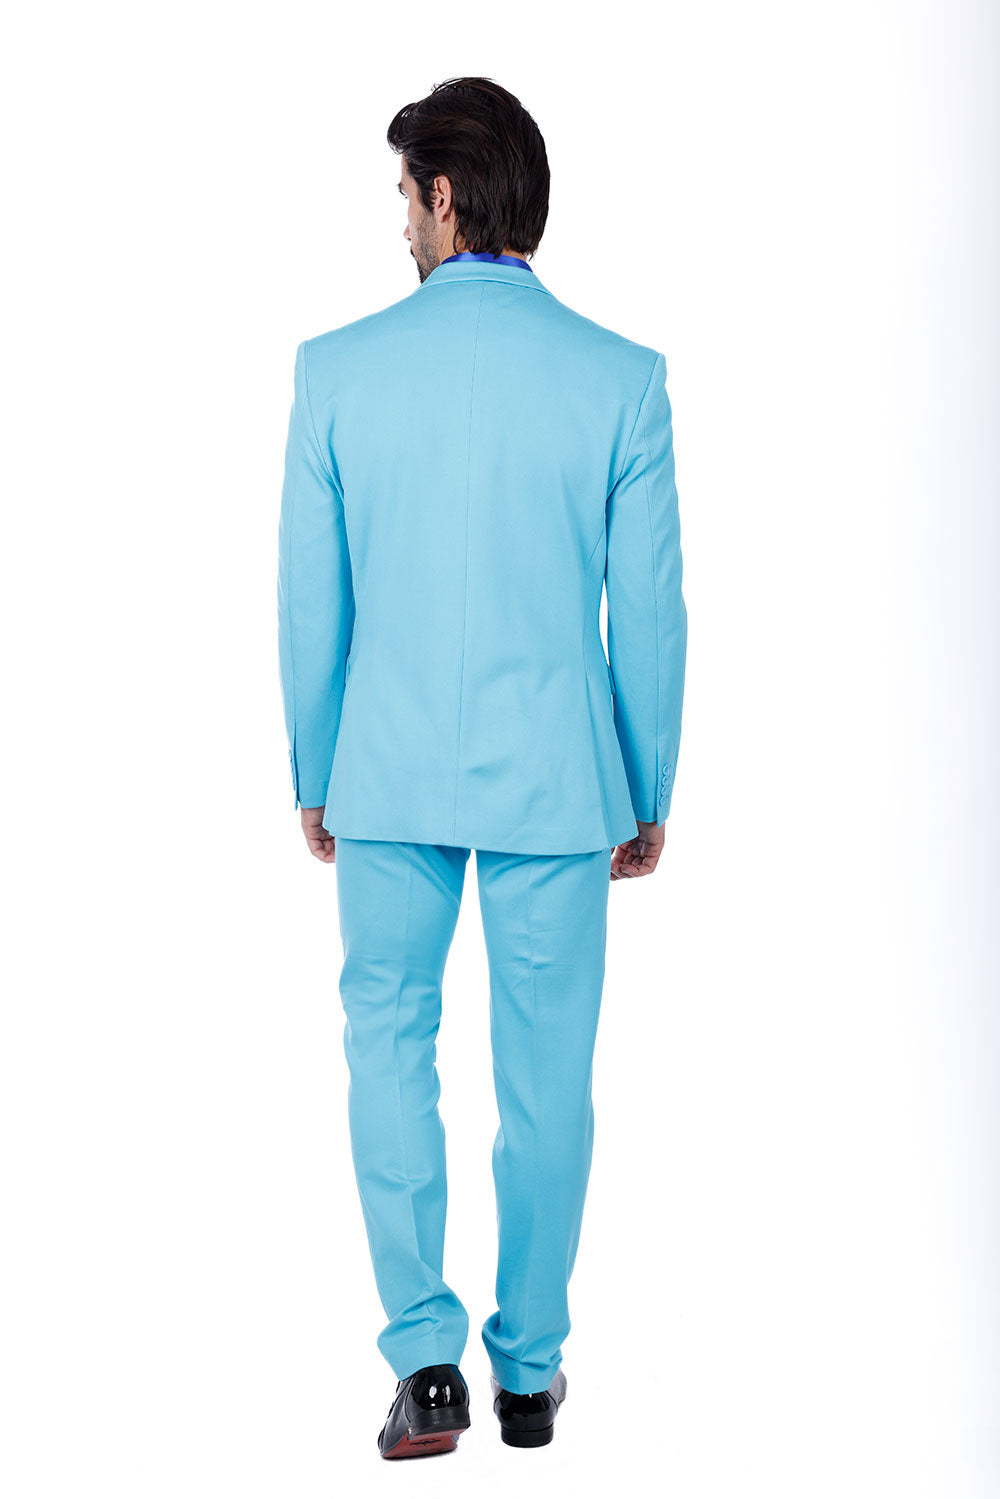 BARABAS Men's Brushed Cotton Notch Lapel Matte Casual Suit 3SU02 Turquoise